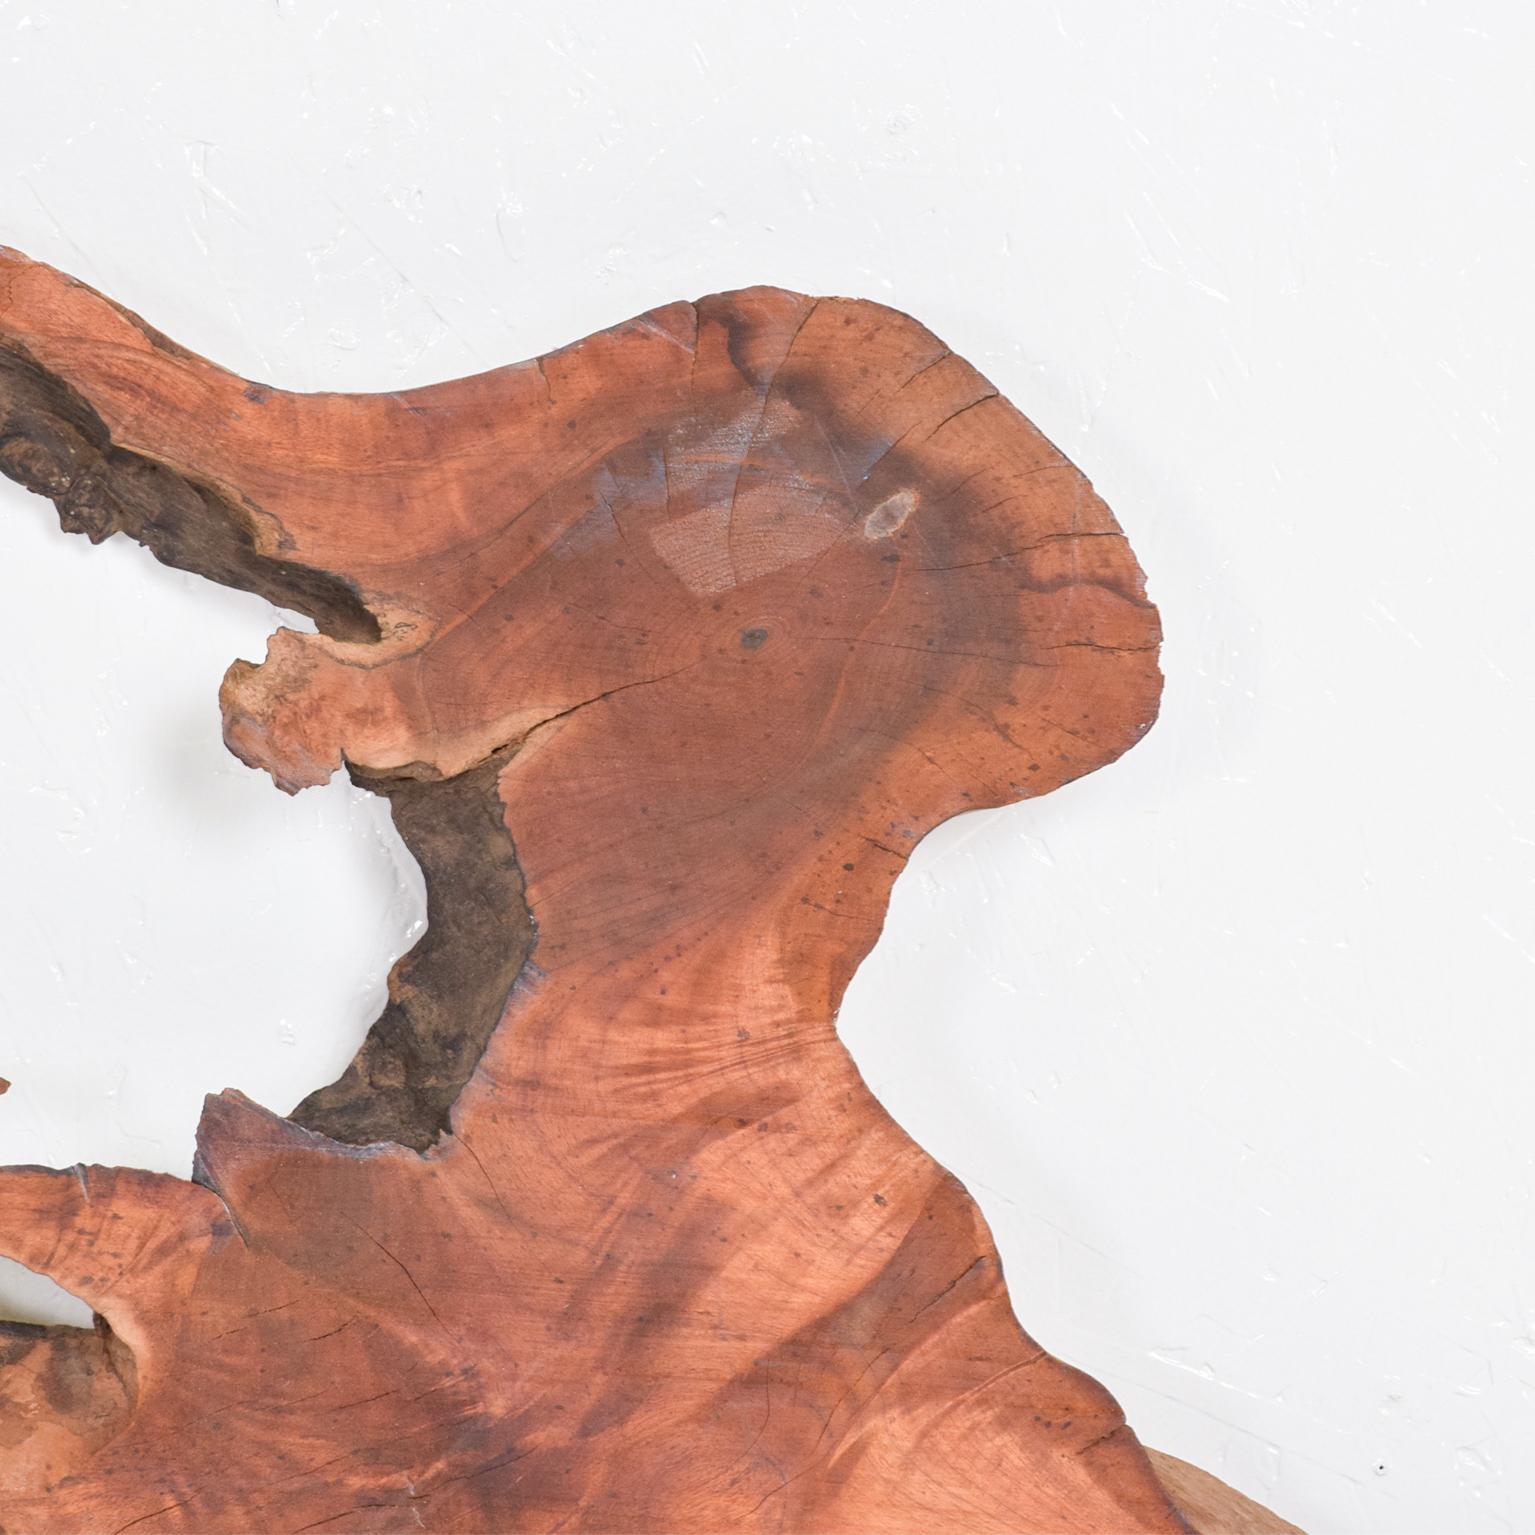 Sculpture organique en bois brut Art
George Nakashima a inspiré. 
Le type de bois apparaît comme étant du noyer.
45,13 L x 82,5 L au point le plus long, 2,38 pouces d'épaisseur.
Original Unrestored Vintage Condition.
Veuillez consulter nos images.